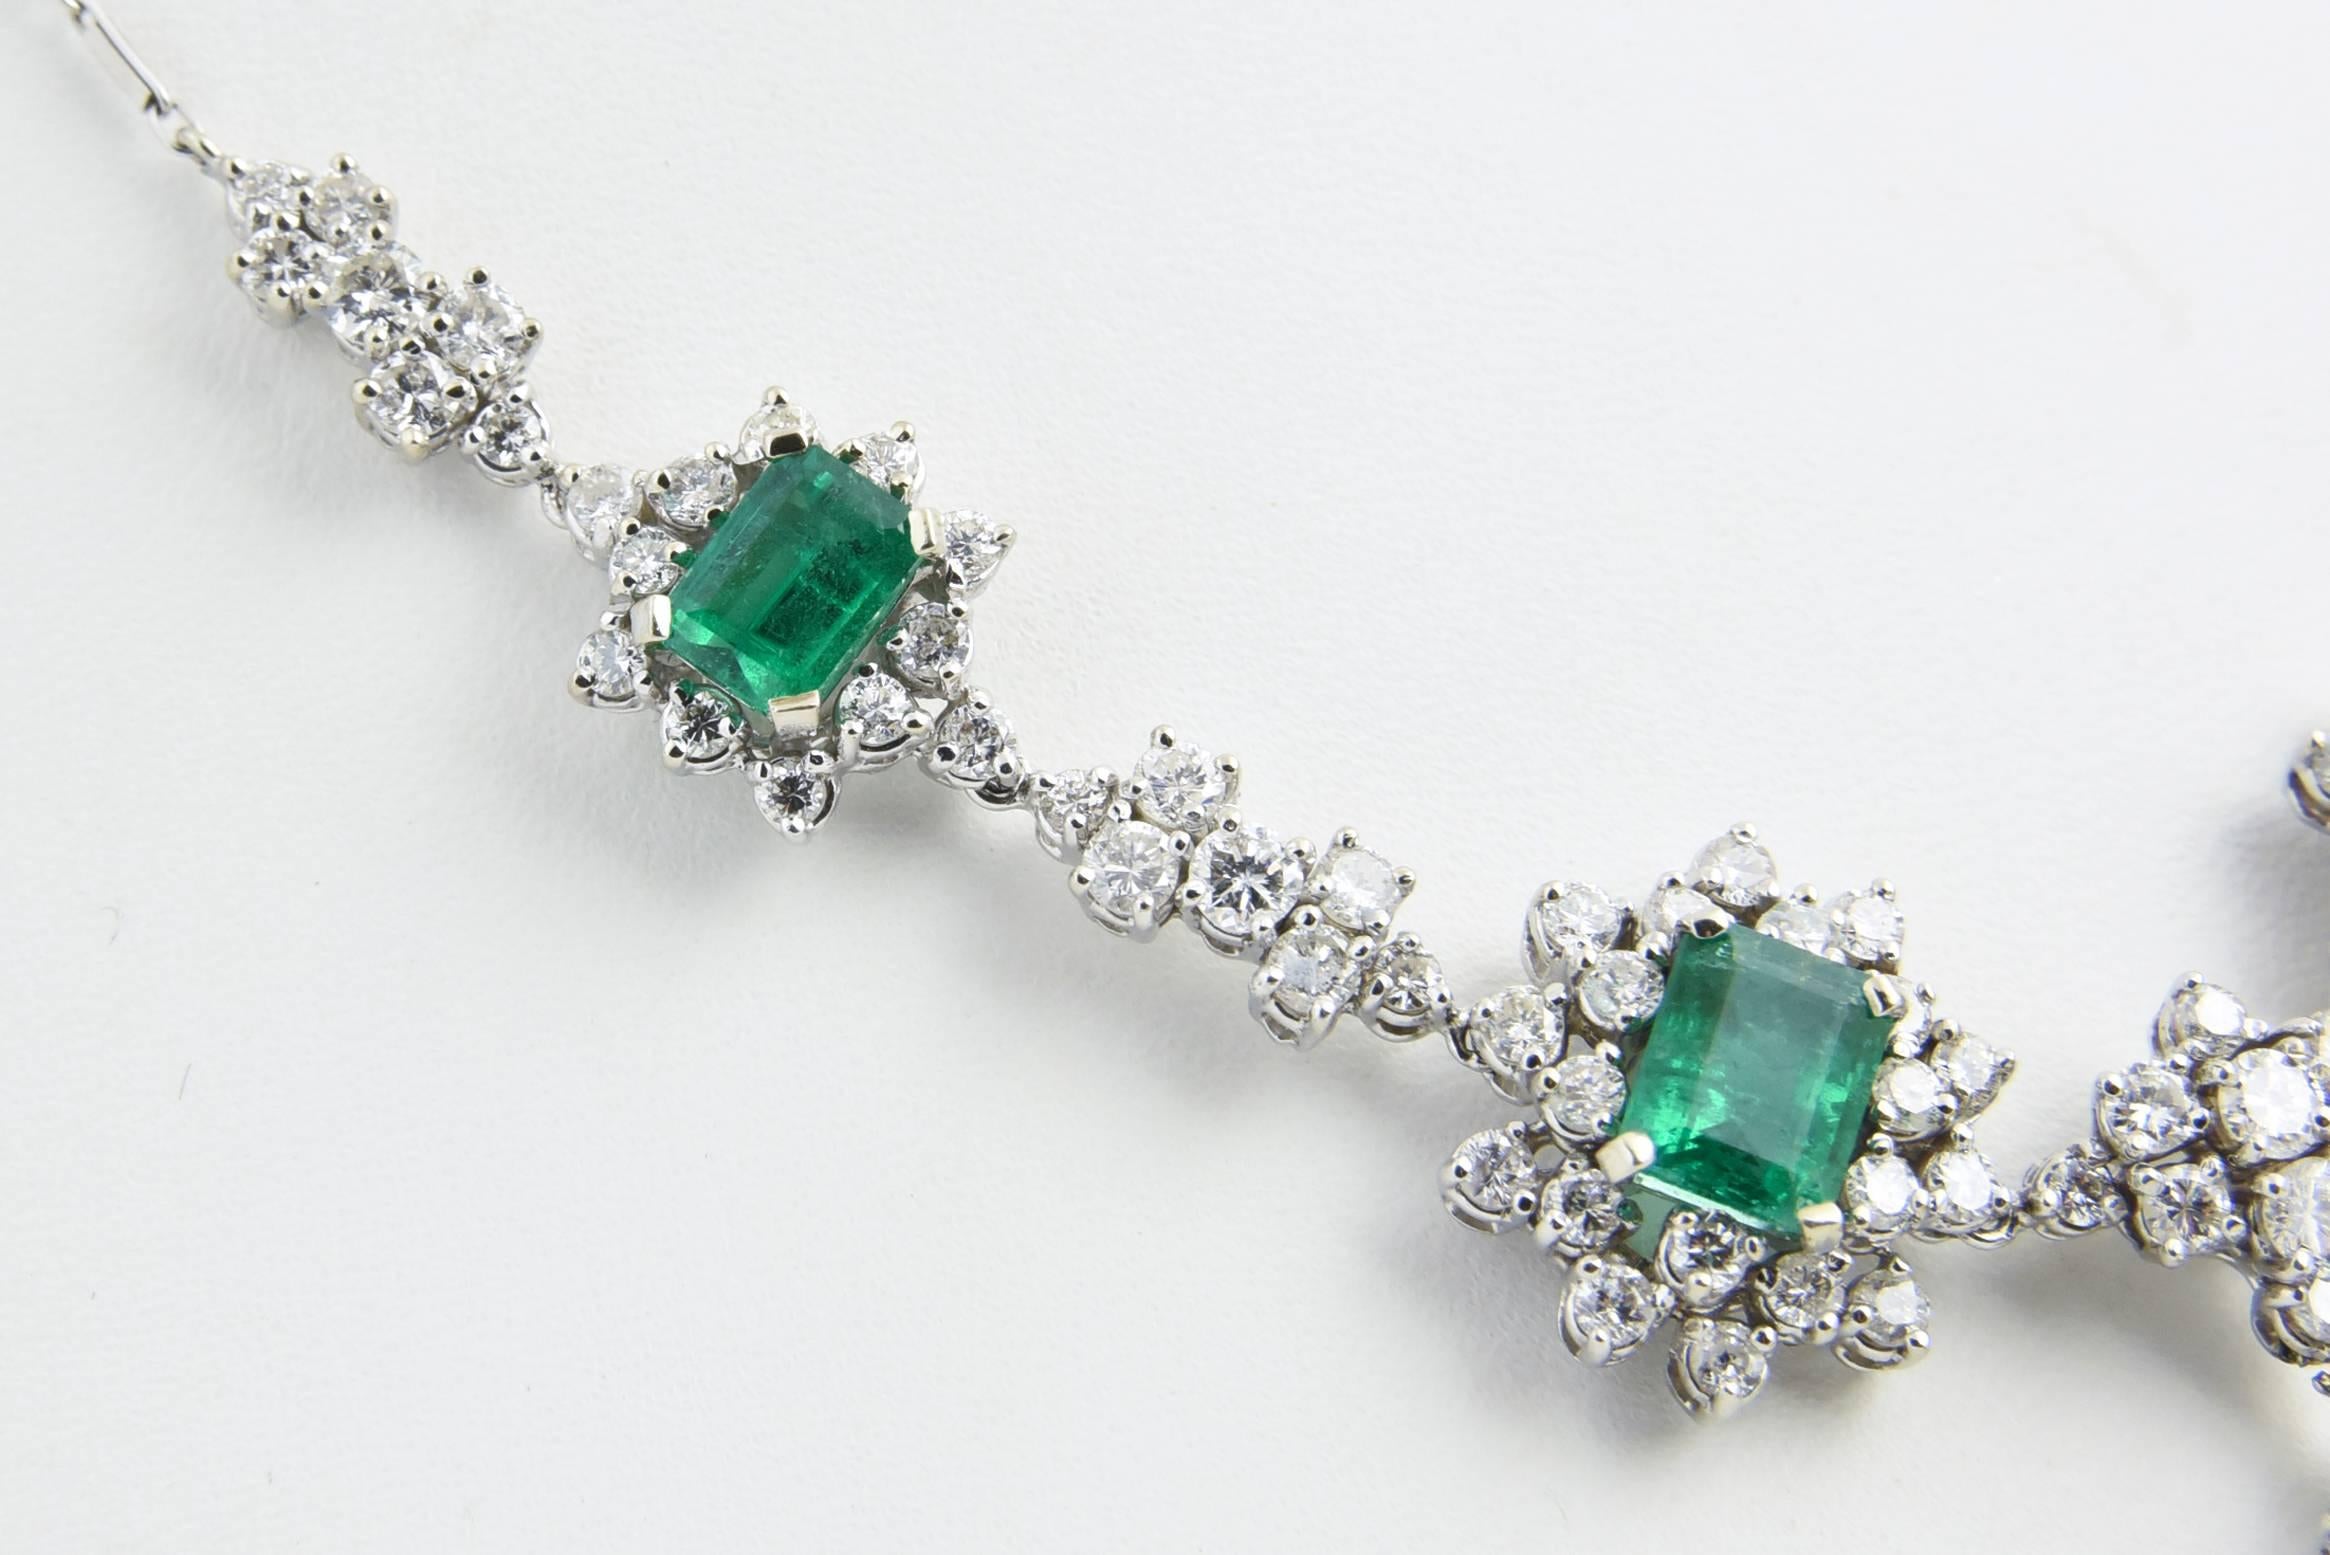 1950's jewelry styles